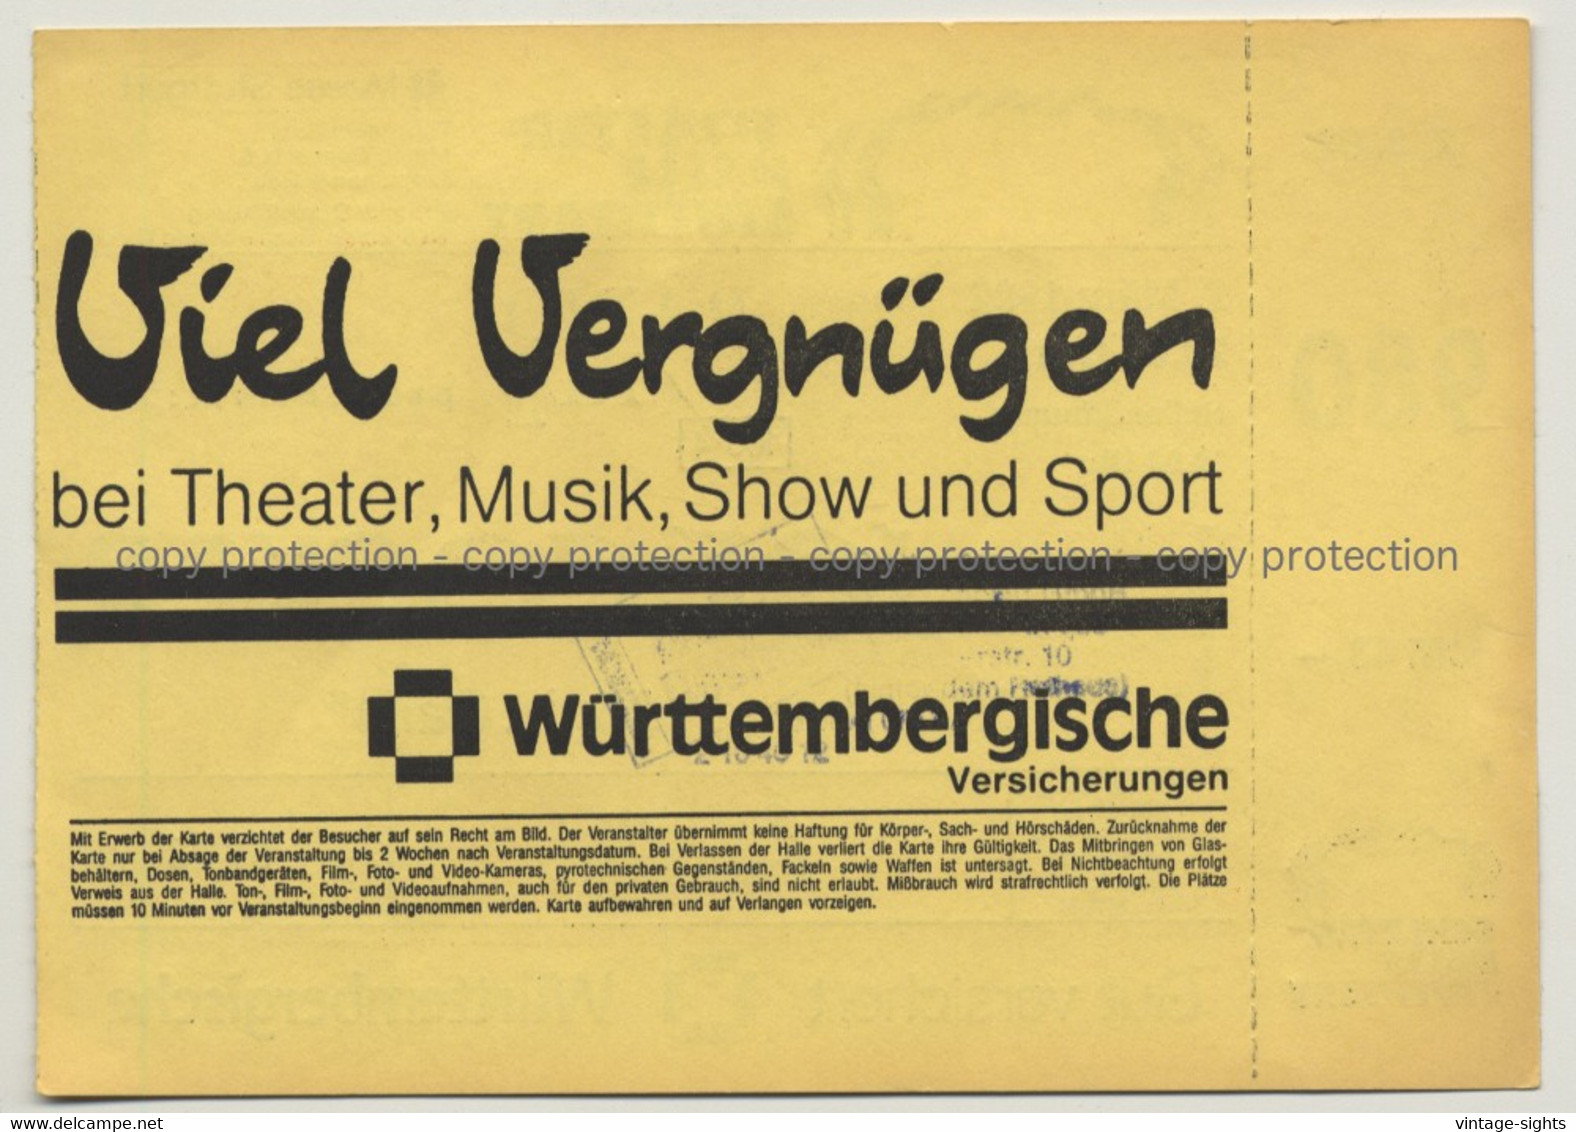 Joe Cocker - Night Calls Tour '92 Ticket N° 5723 Stuttgart - Unused (Vintage Memorabilia) - Tickets De Concerts